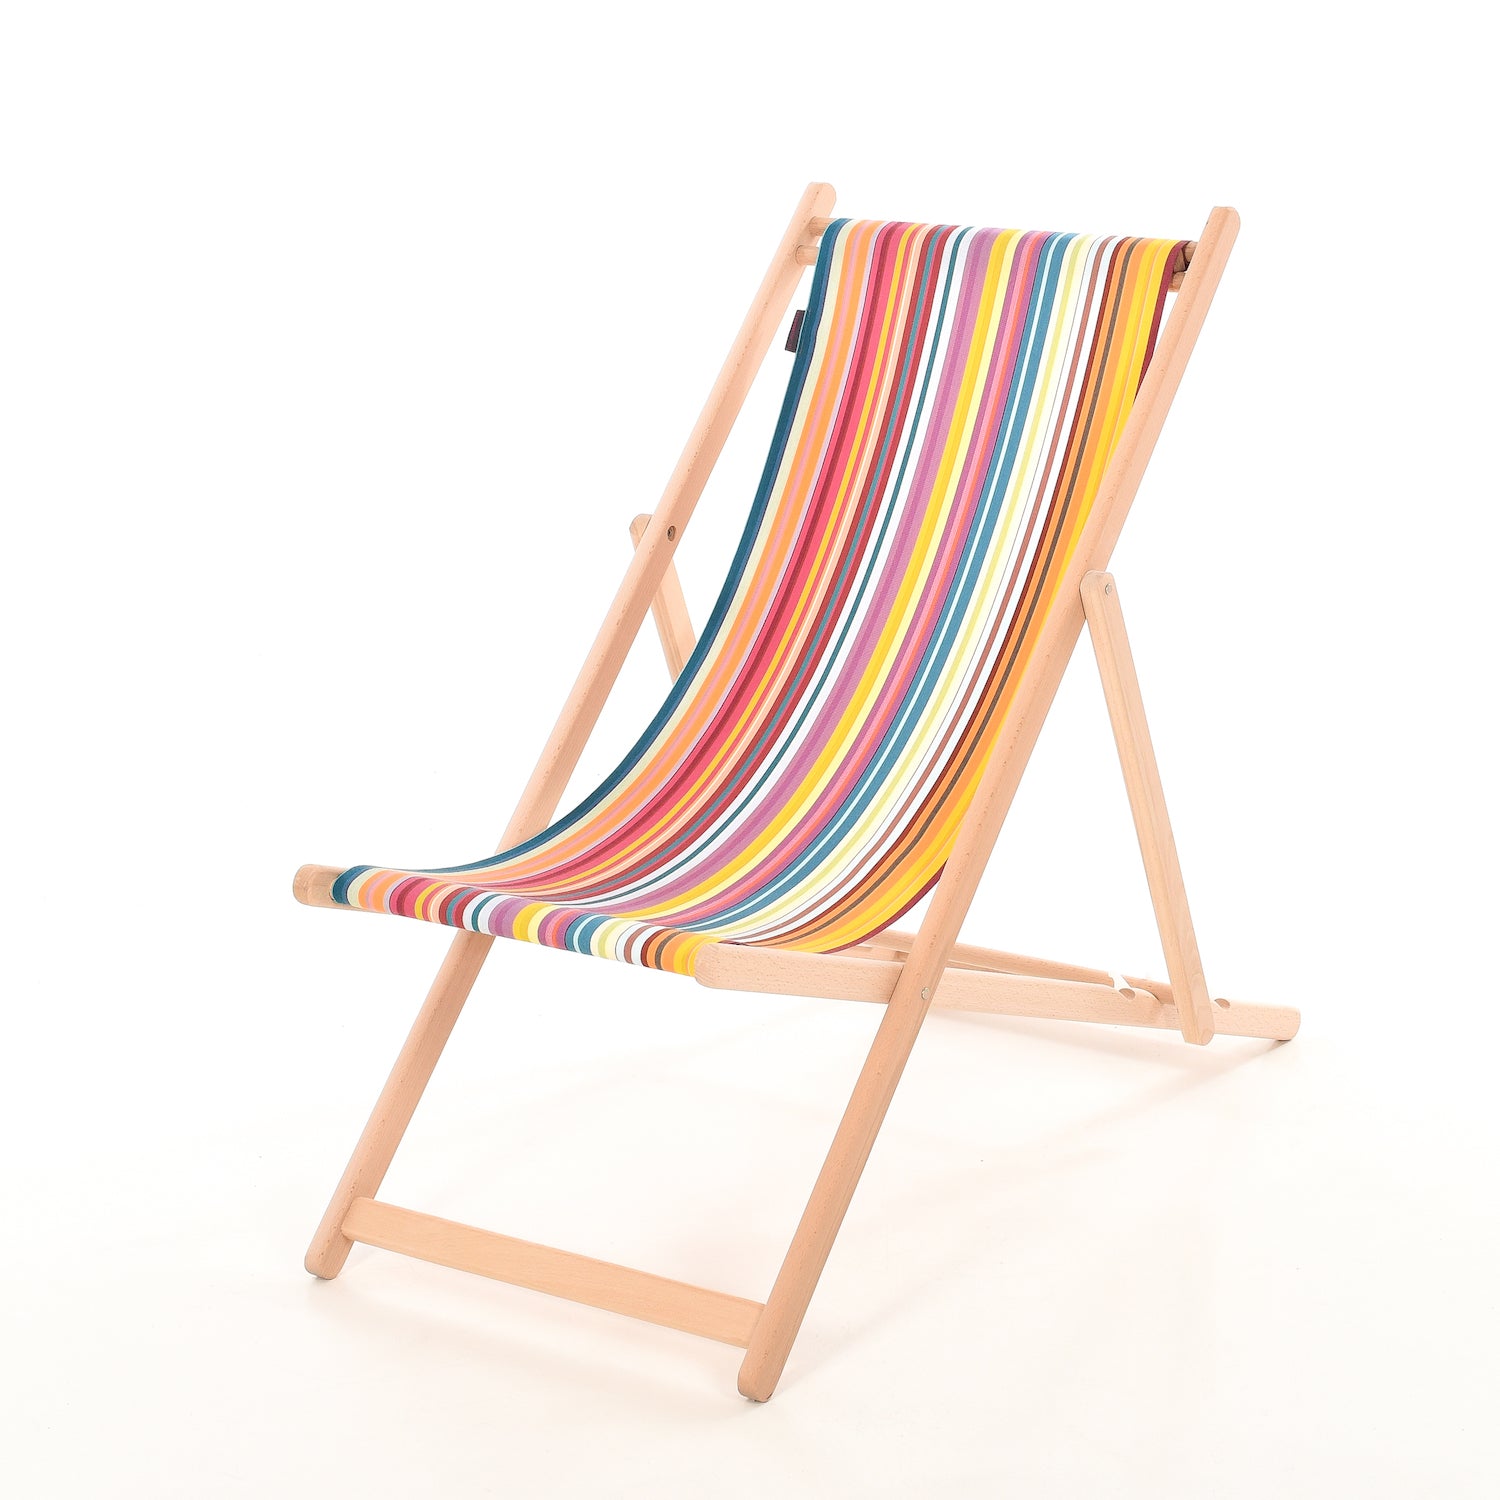 Vorm van het schip Marty Fielding verontschuldiging houten strandstoel met outdoor stof jour de fete - kleurmeester.nl –  Kleurmeester.nl